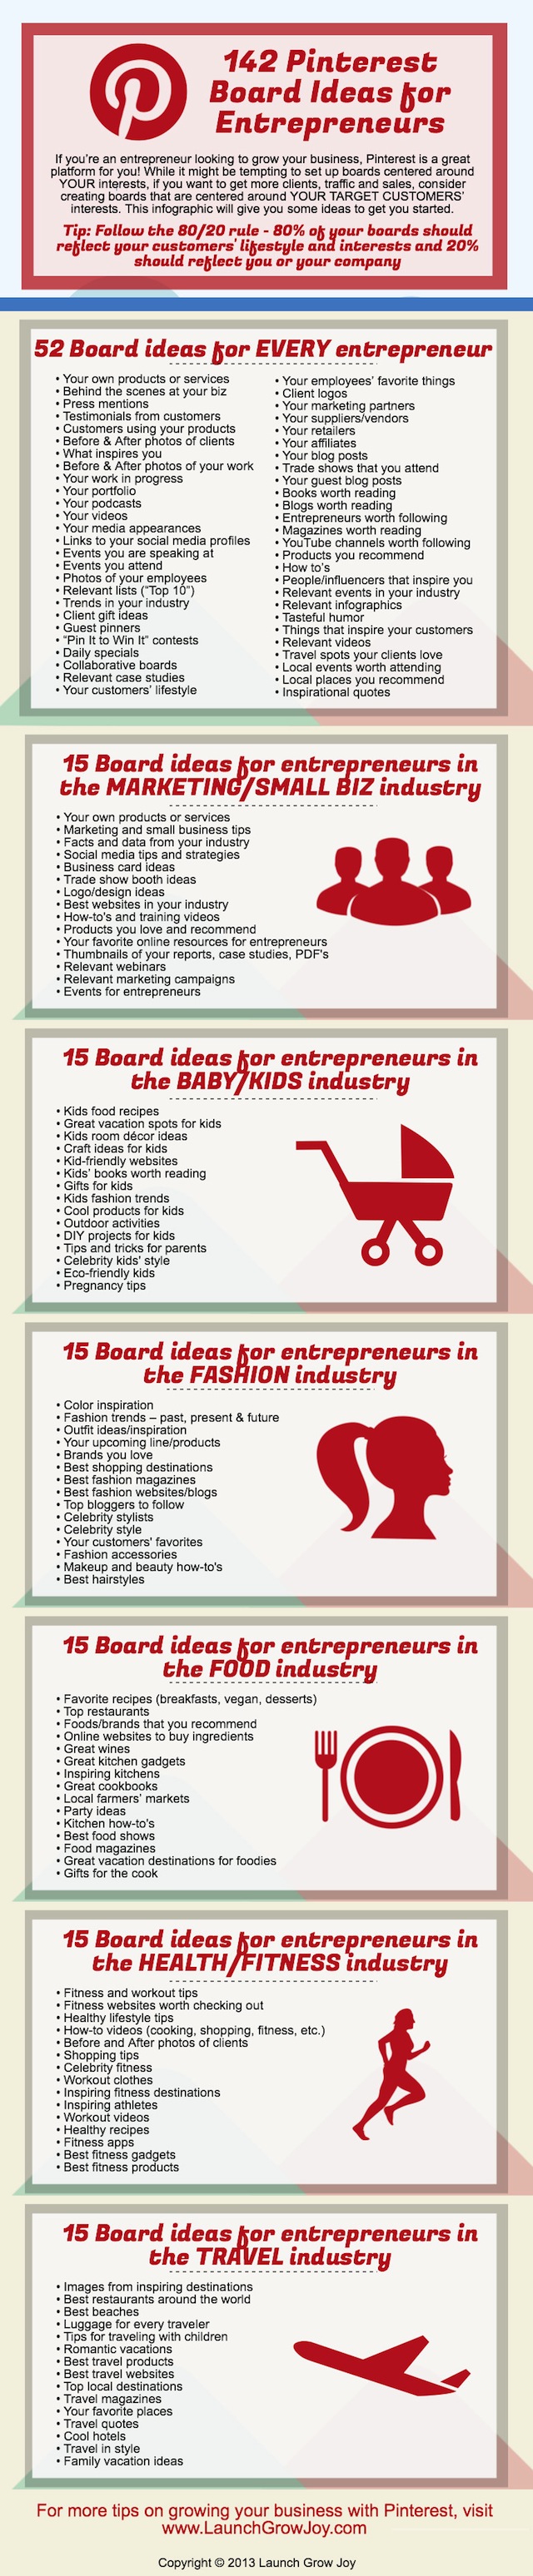 42-Pinterest-board-ideas-for-entrepreneurs